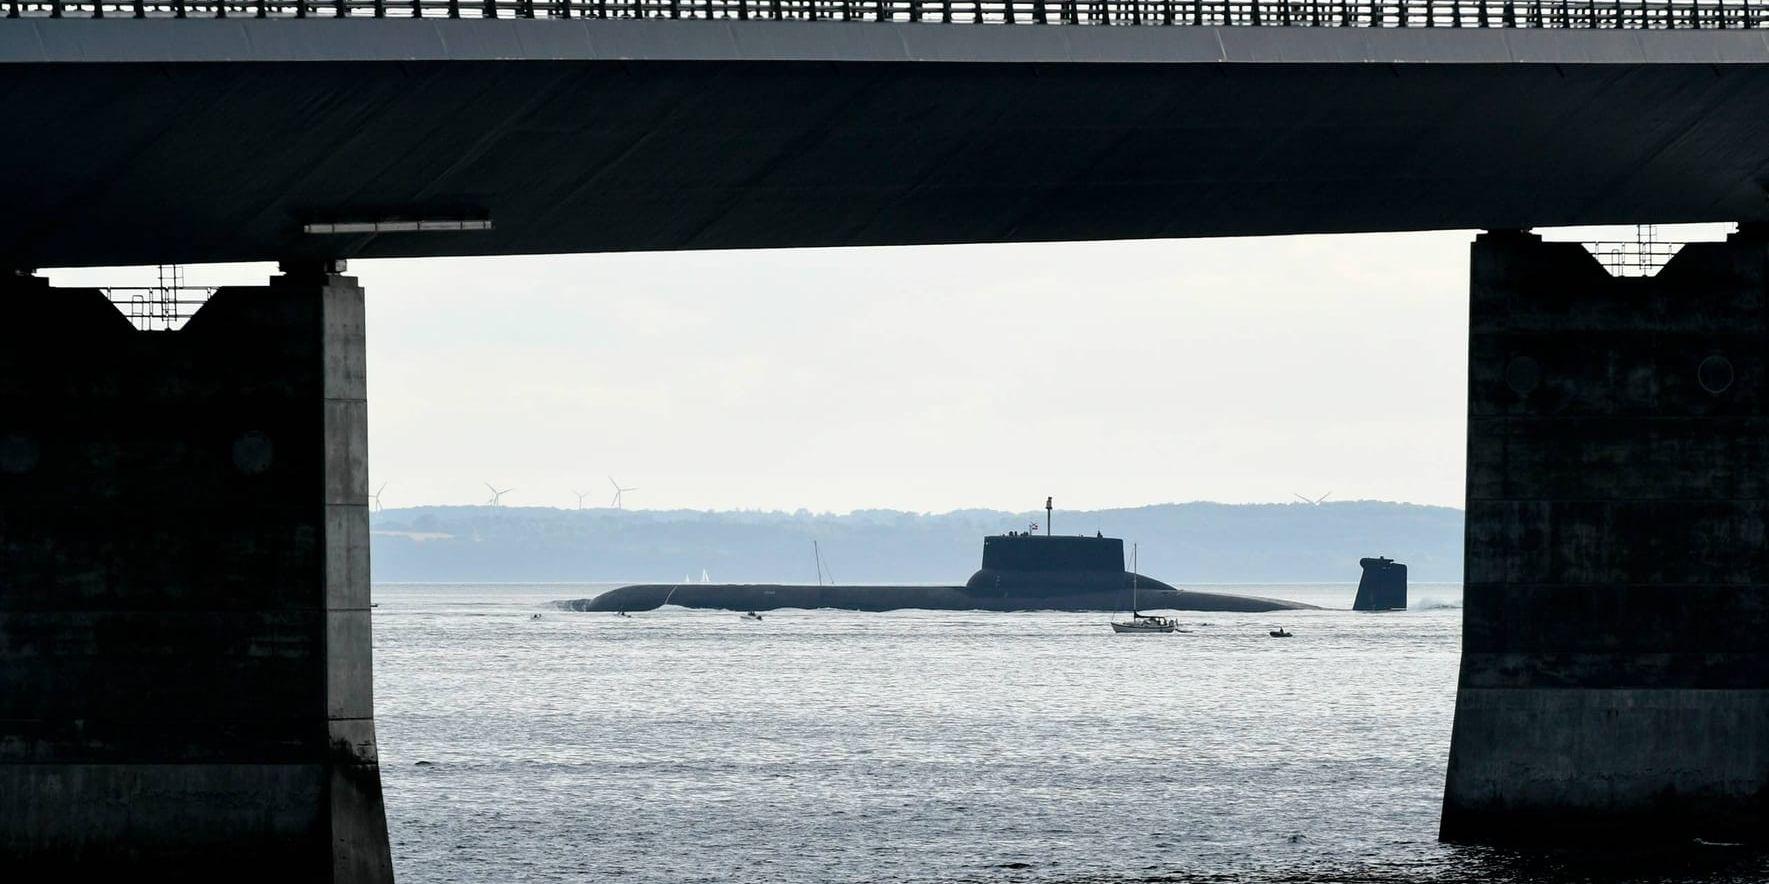 Den ryska atomubåten Dmitrij Donskoj passerar Stora Bältbron på fredagskvällen.